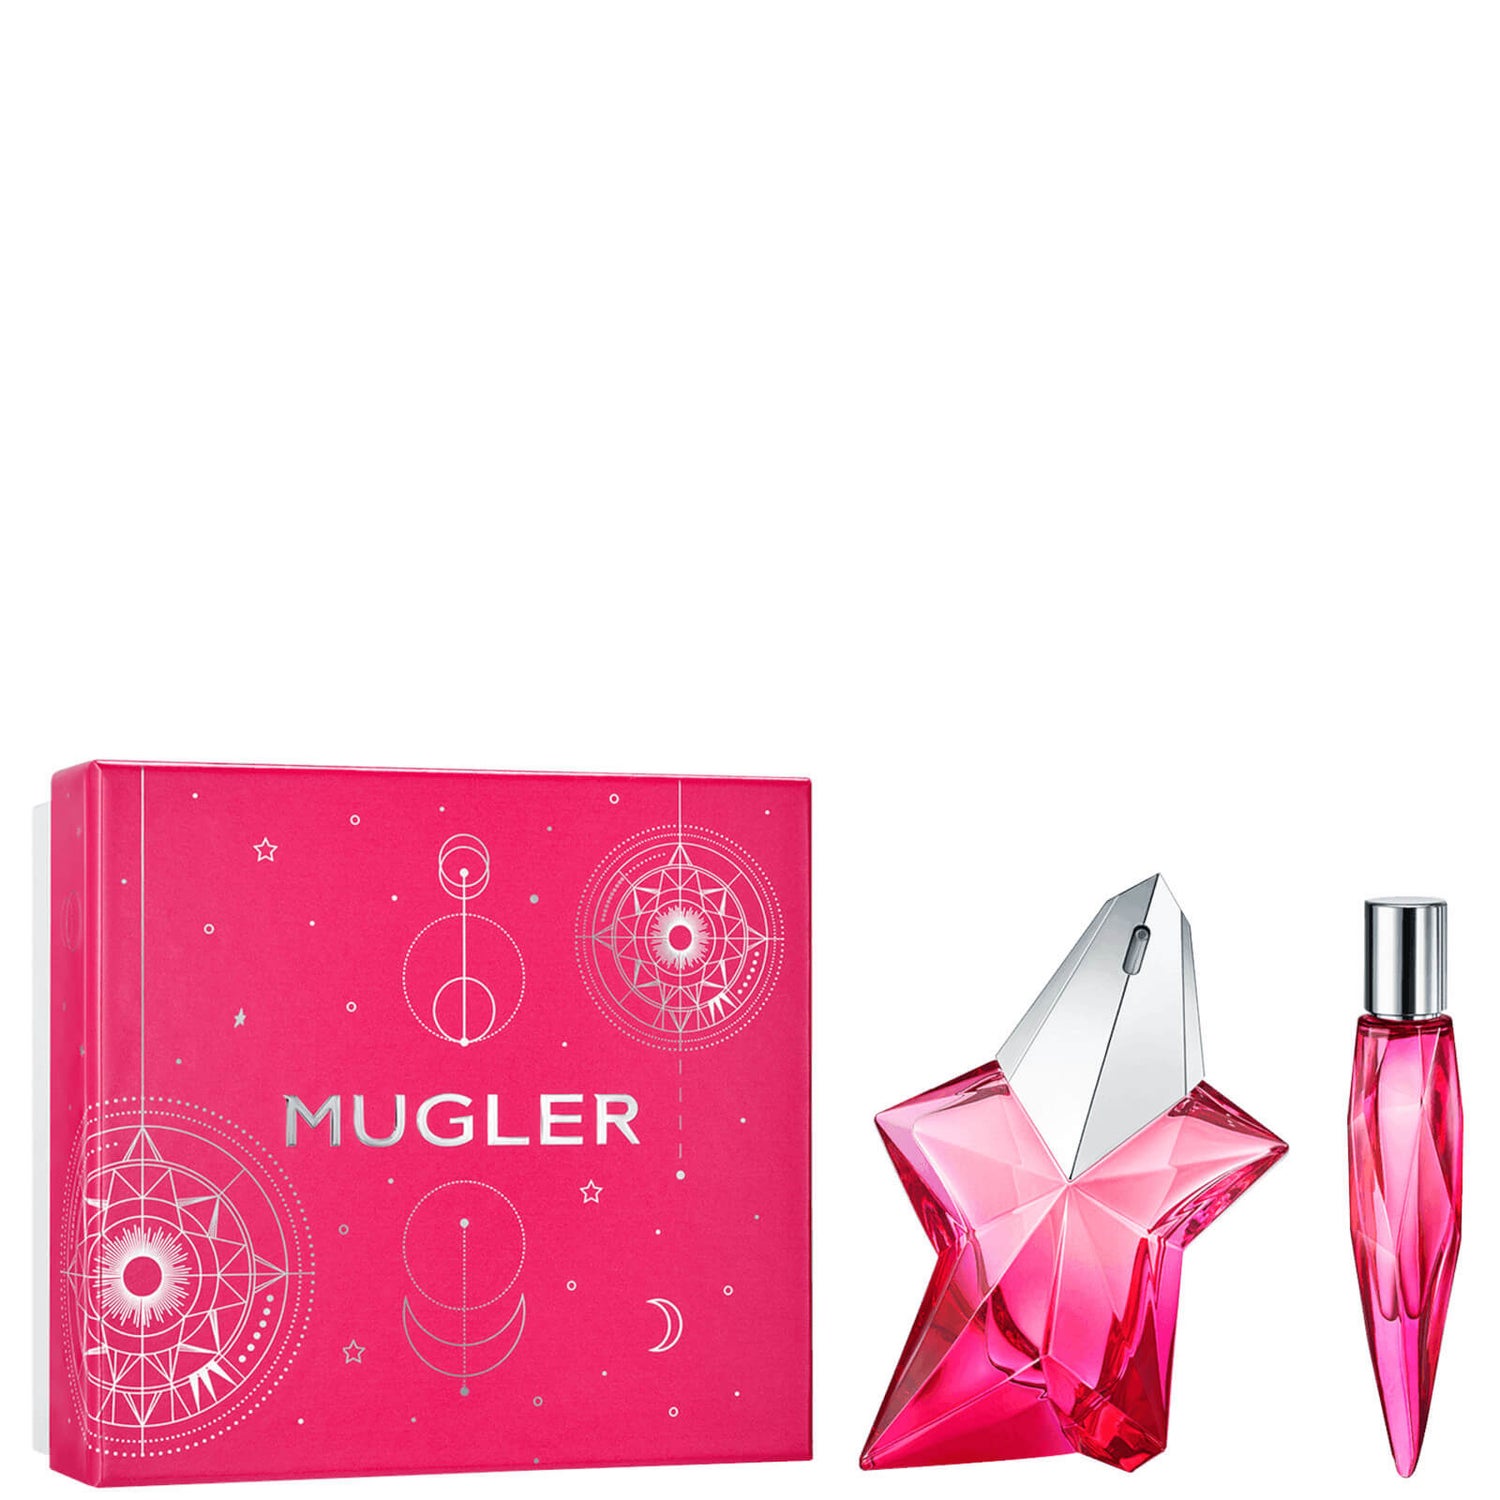 Mugler Angel Nova Eau de Parfum Gift Set 30ml (värde £70.00)